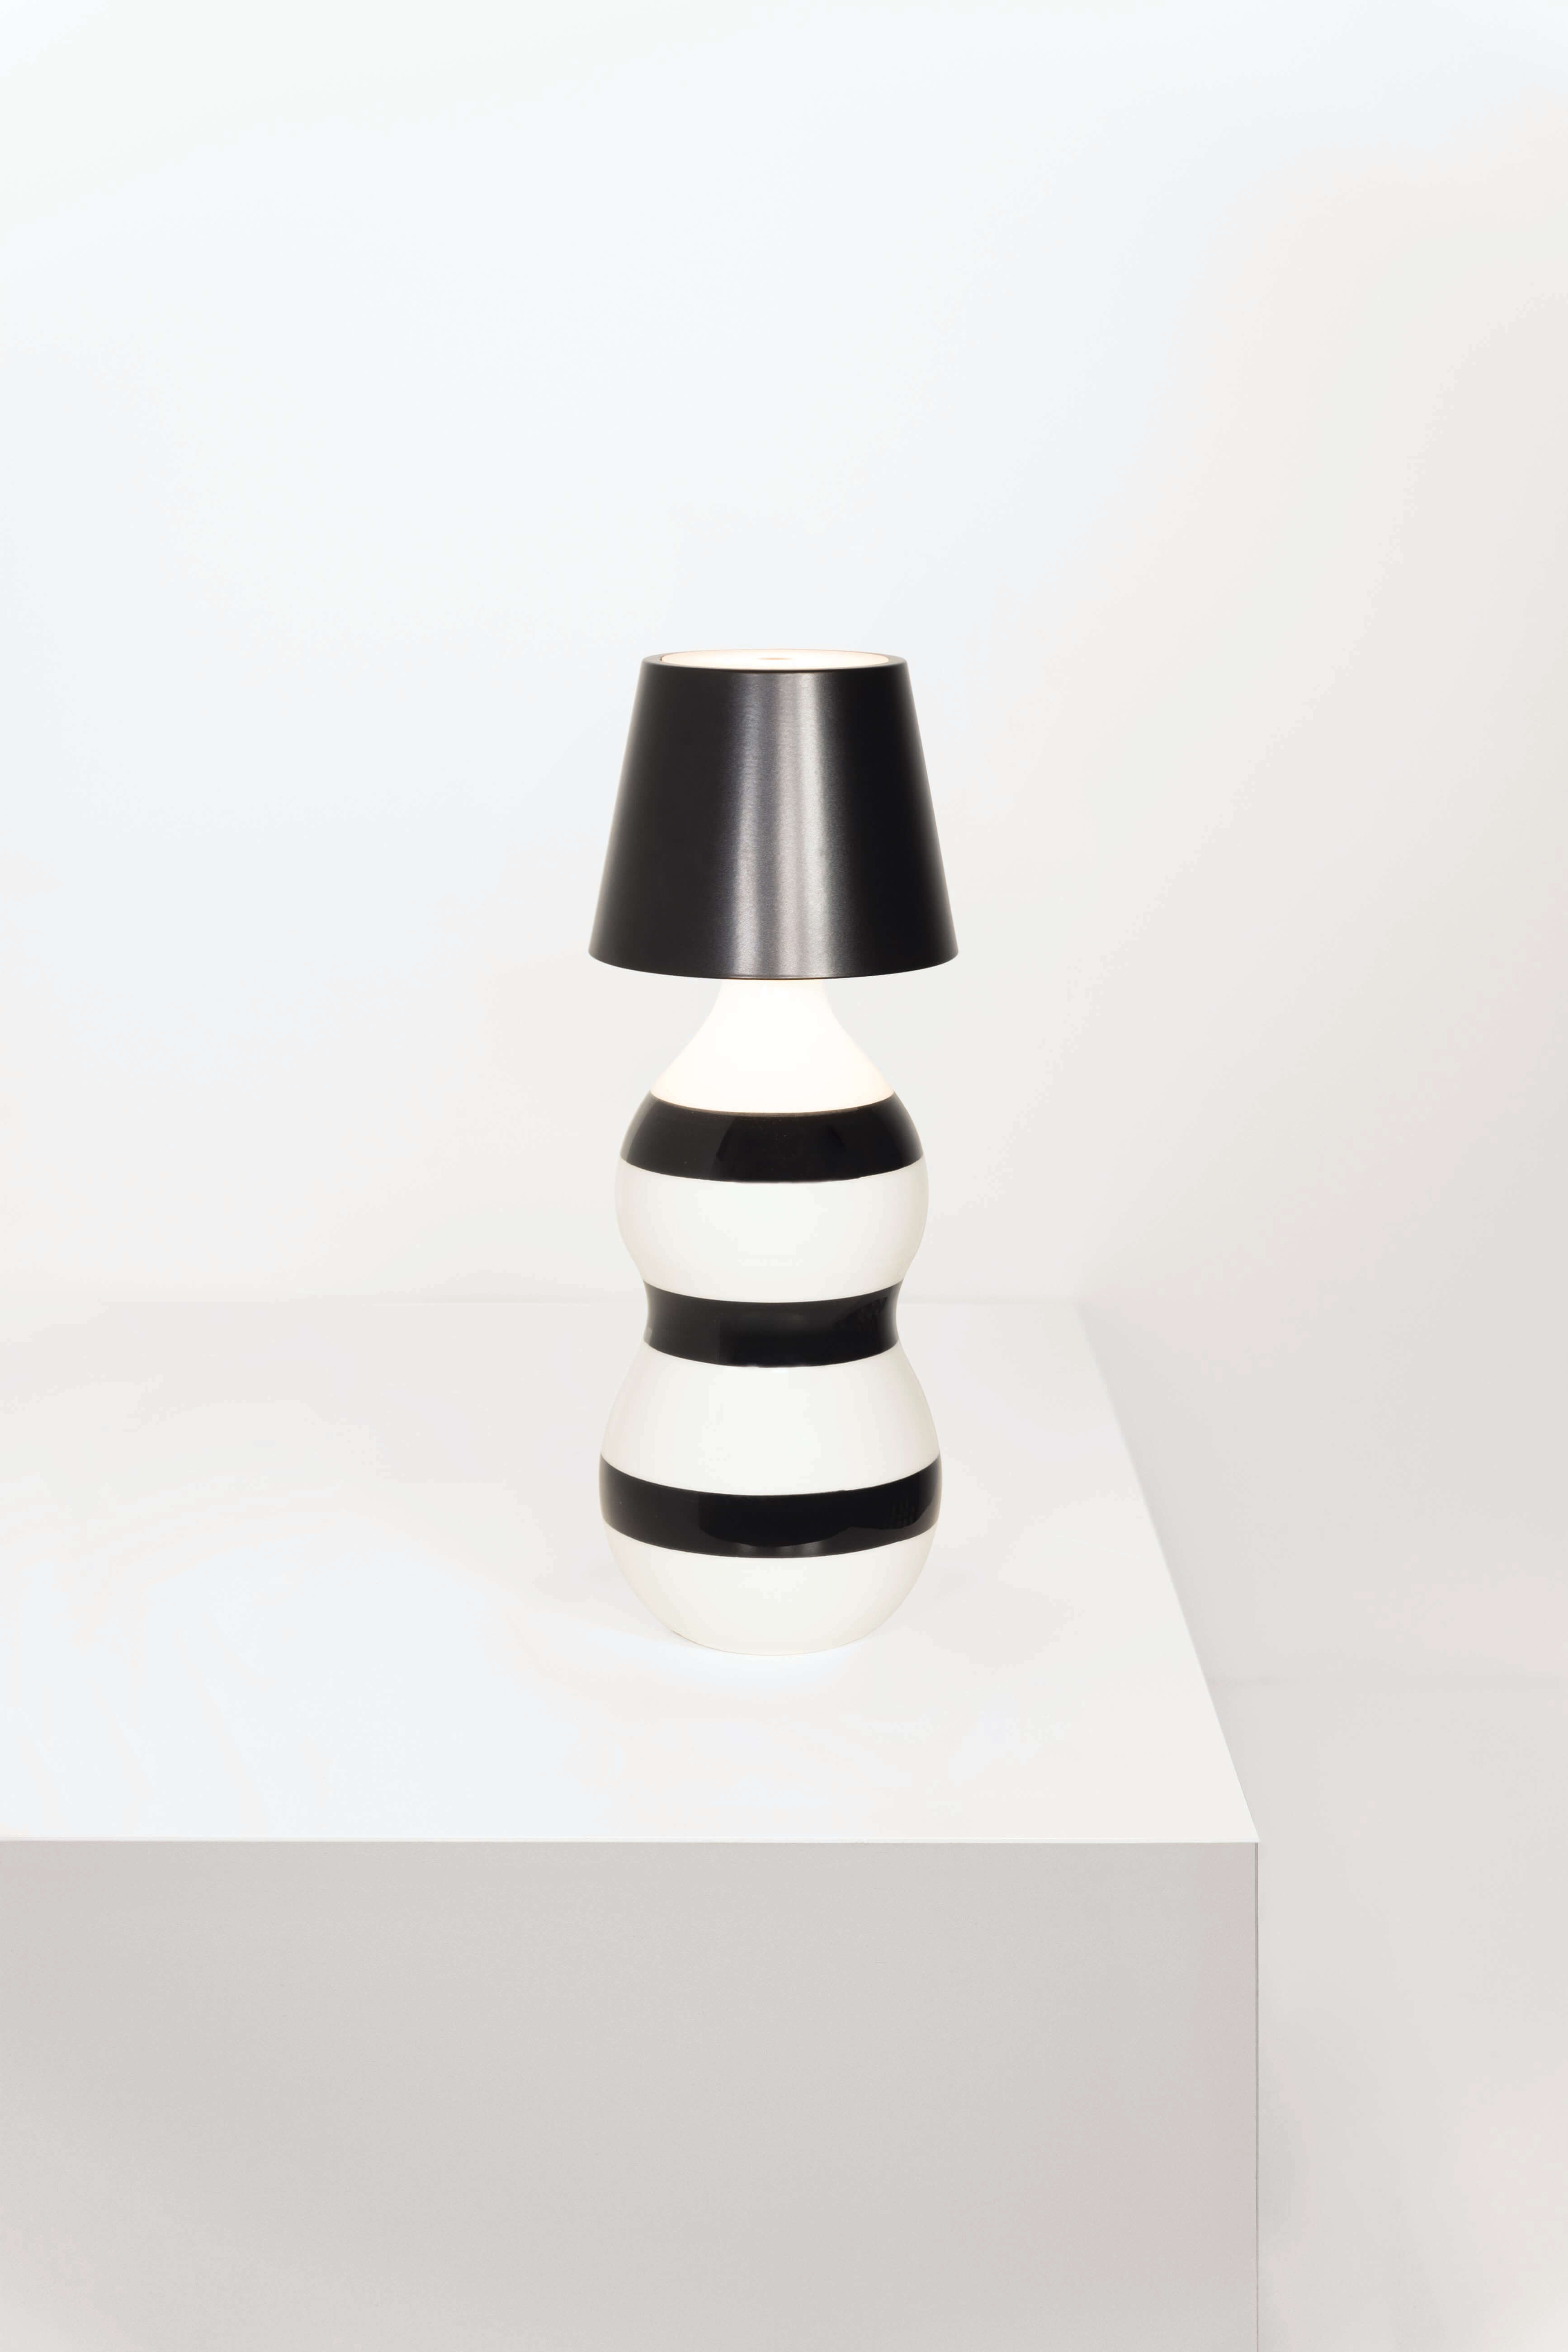 Zafferano Poldina Stopper Nero / Black + Lido Keramik Flasche mit horizontalen Ringen in Schwarz